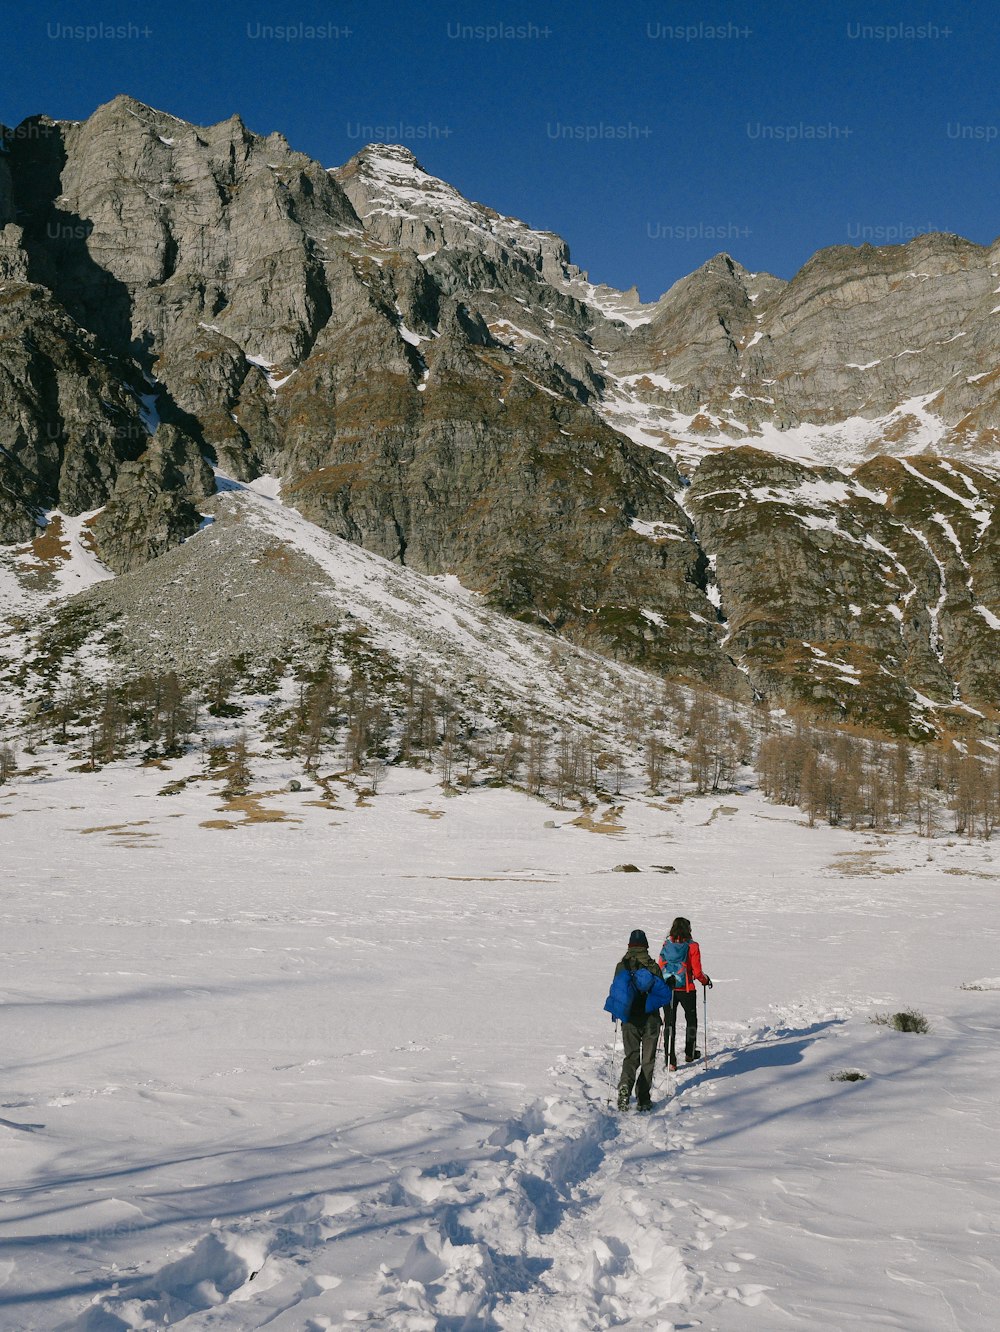 Un couple de personnes skie sur une piste enneigée